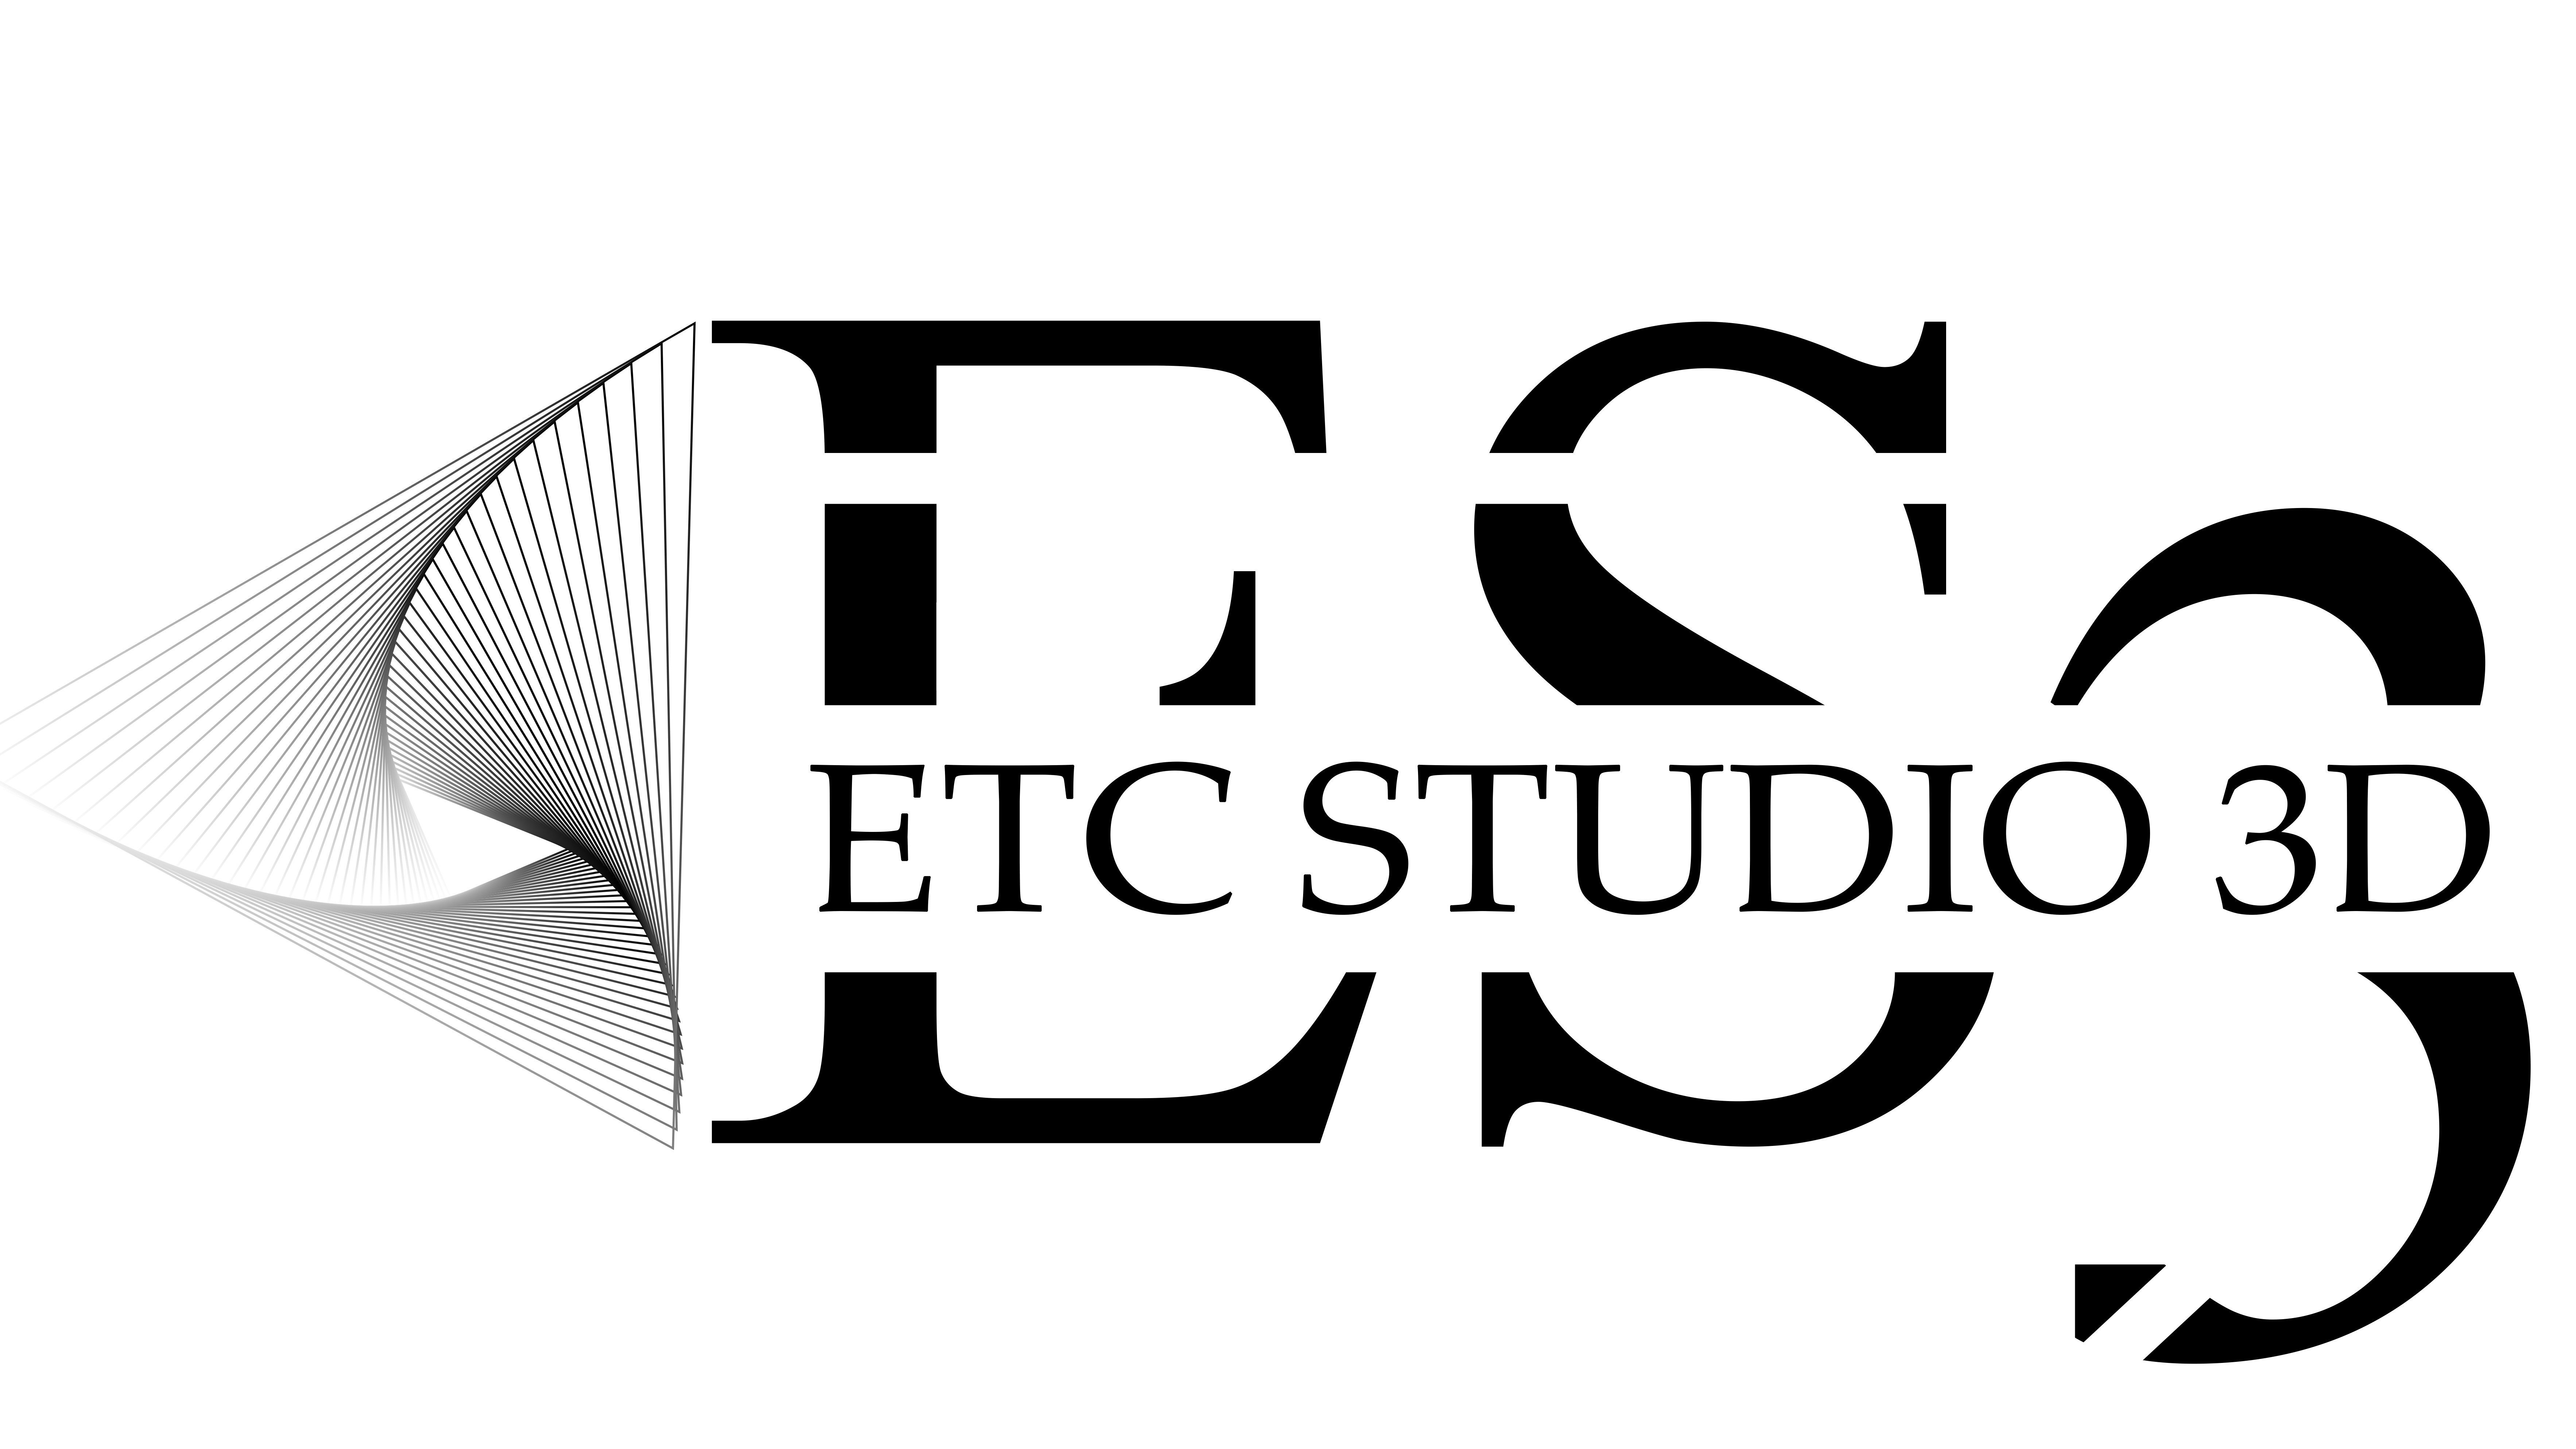 ETC STUDIO 3D